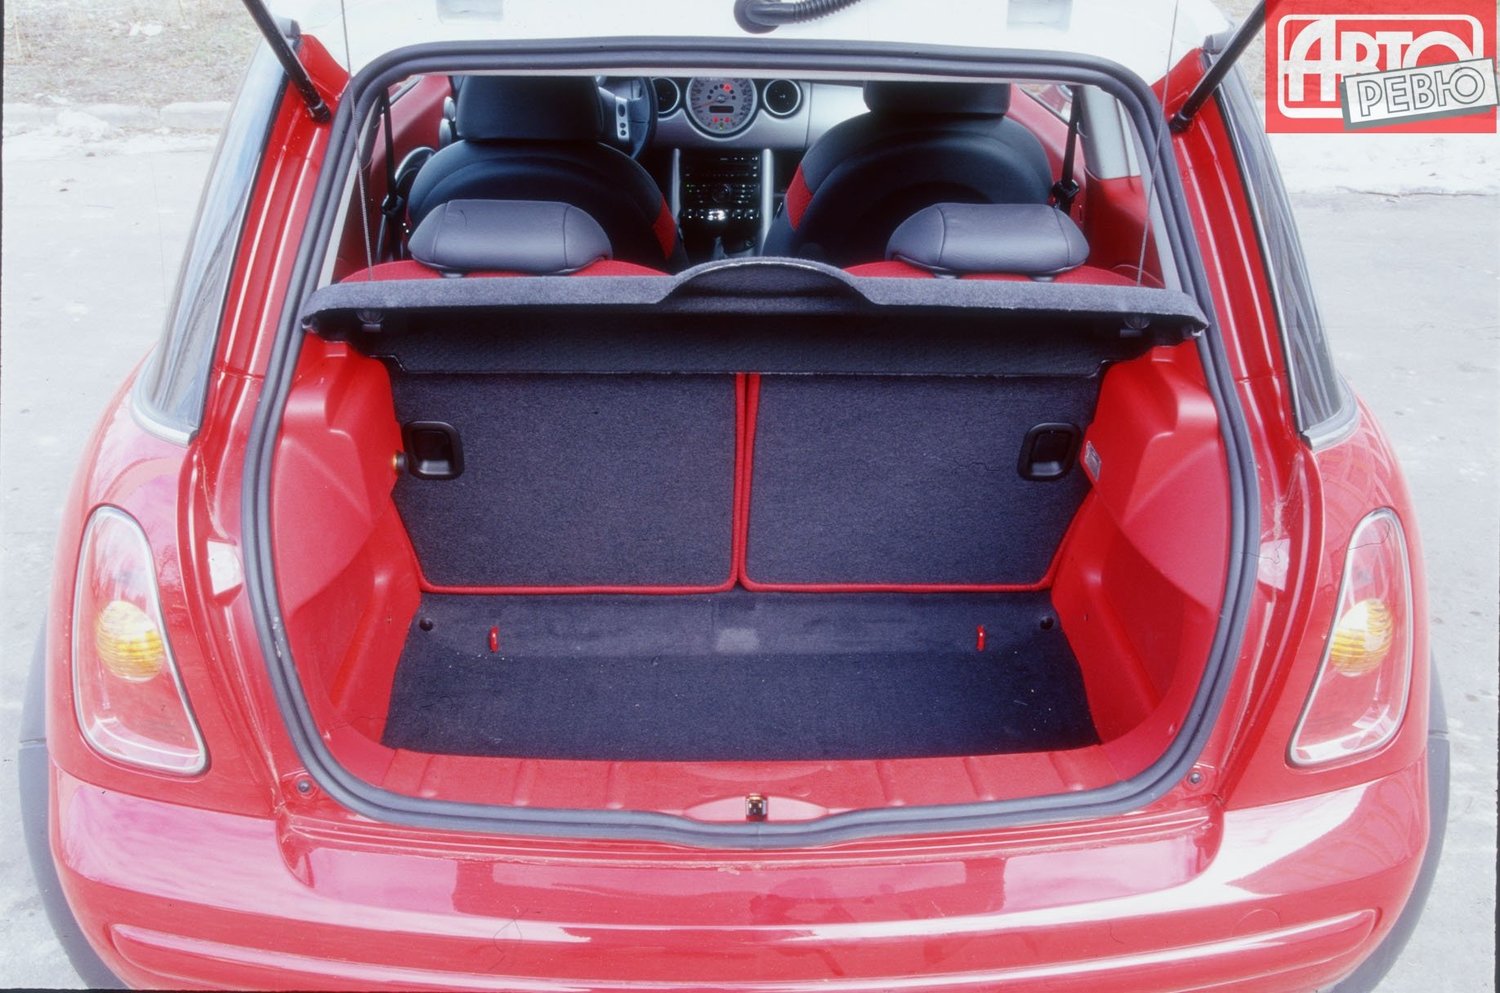 хэтчбек 3 дв. MINI Hatch 2001 - 2006г выпуска модификация 1.4 MT (75 л.с.)